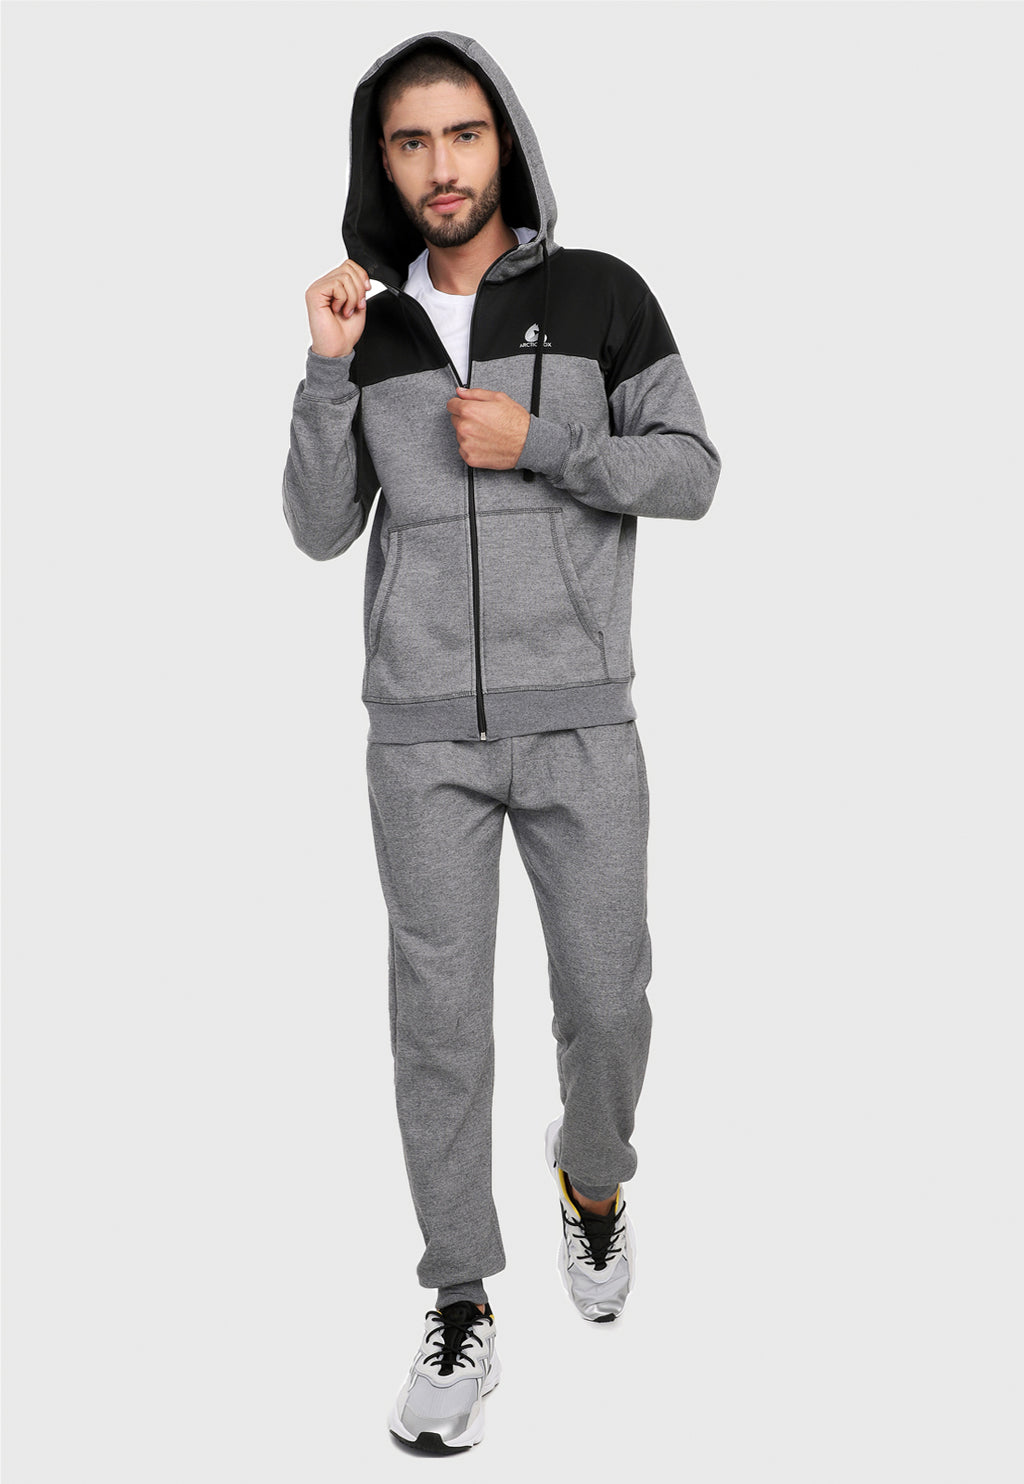 Hombre adulto vistiendo la sudadera para hombre conjunto chaqueta hoodie Gris y Negra corte americano con pantalón de sudadera gris.